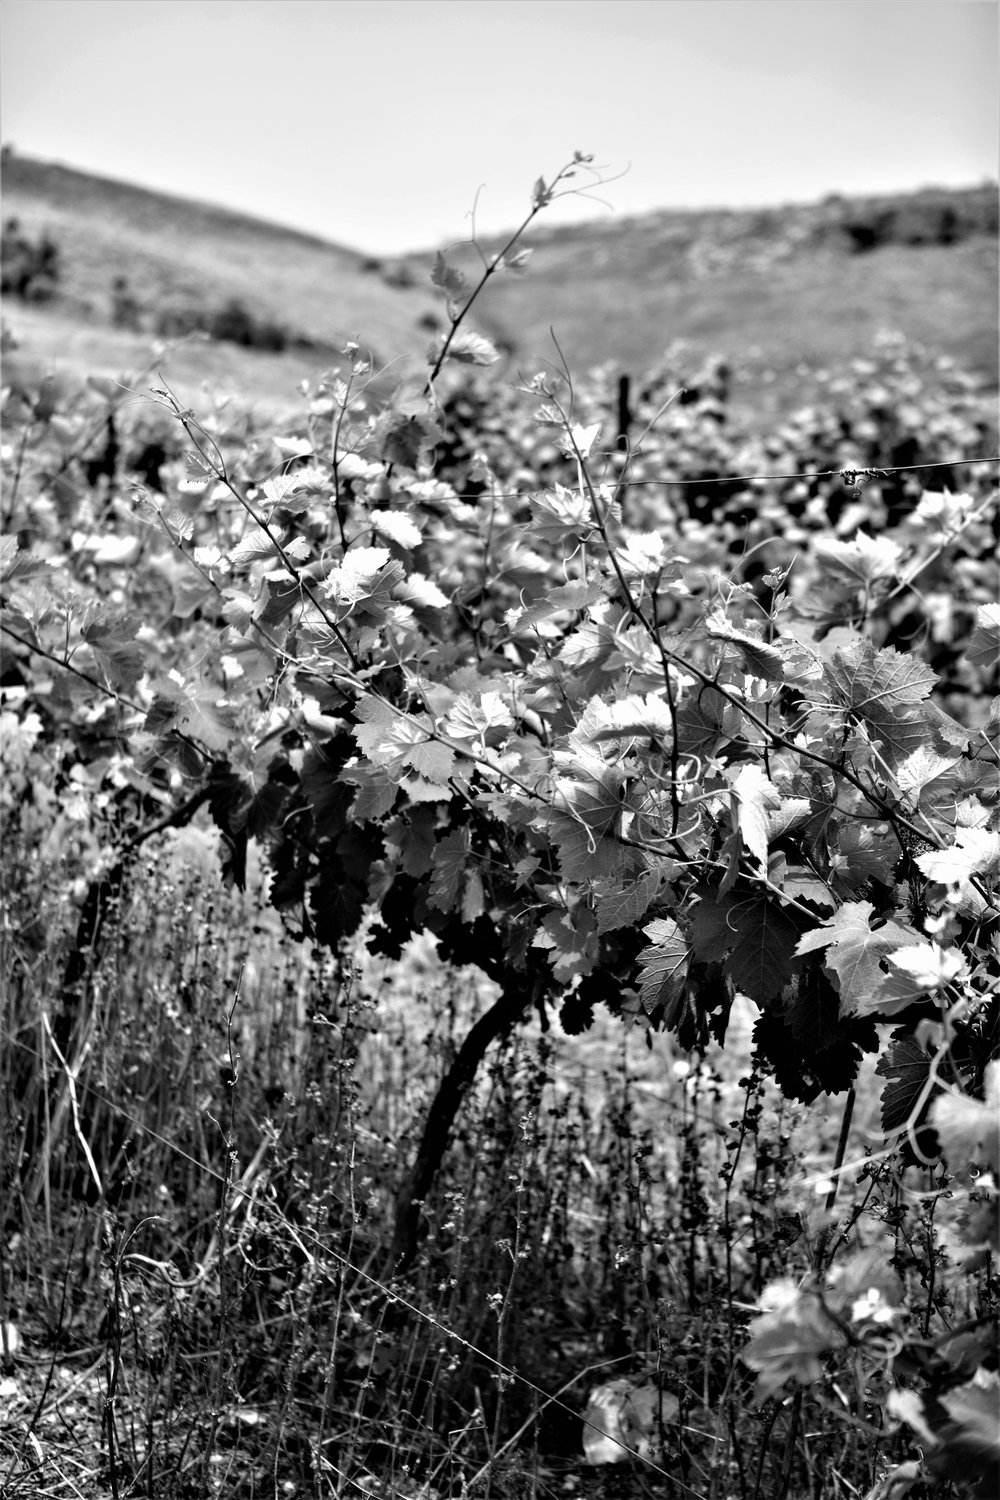  Moshe Kimches Trauben wachsen unweit der Stadt Nablus auf einem einem eingezäunten Feld. 